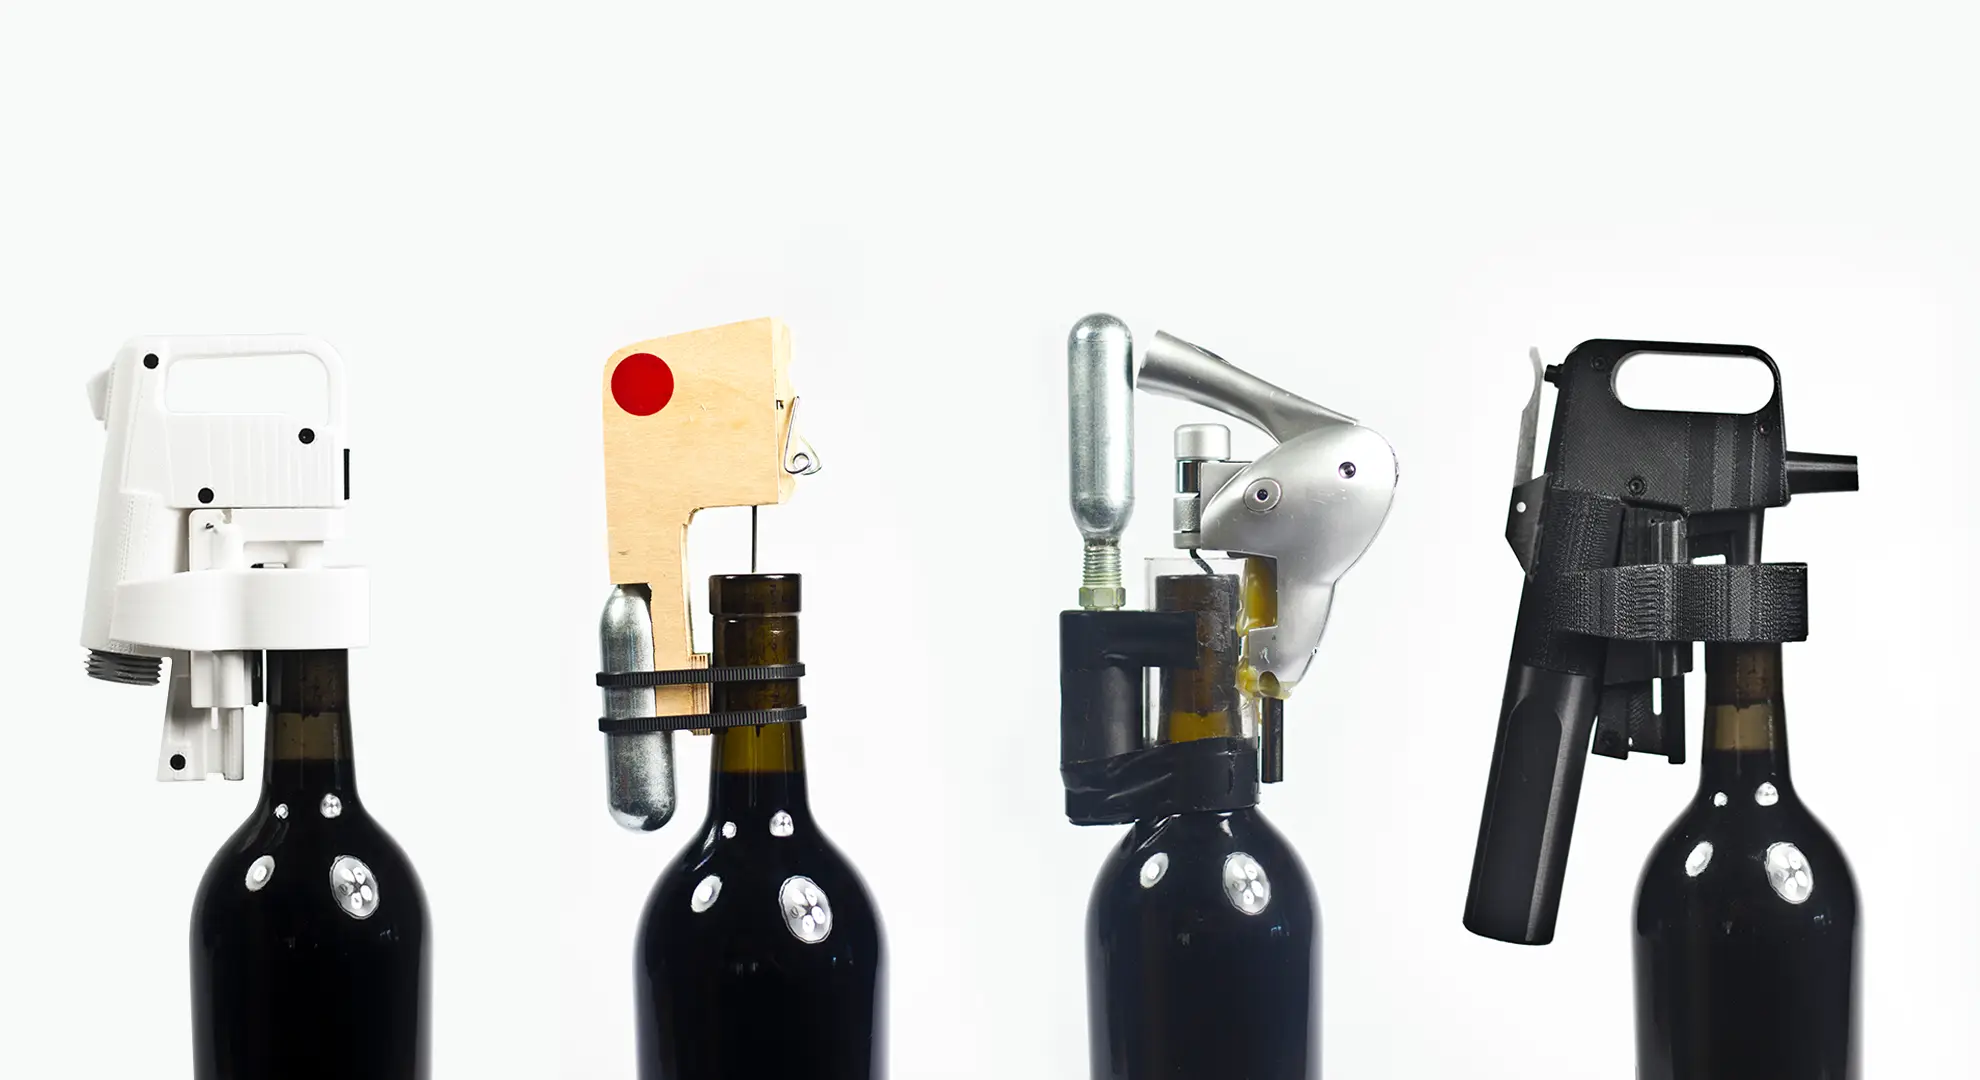 Diversi prototipi di Coravin su bottiglie di vino.
